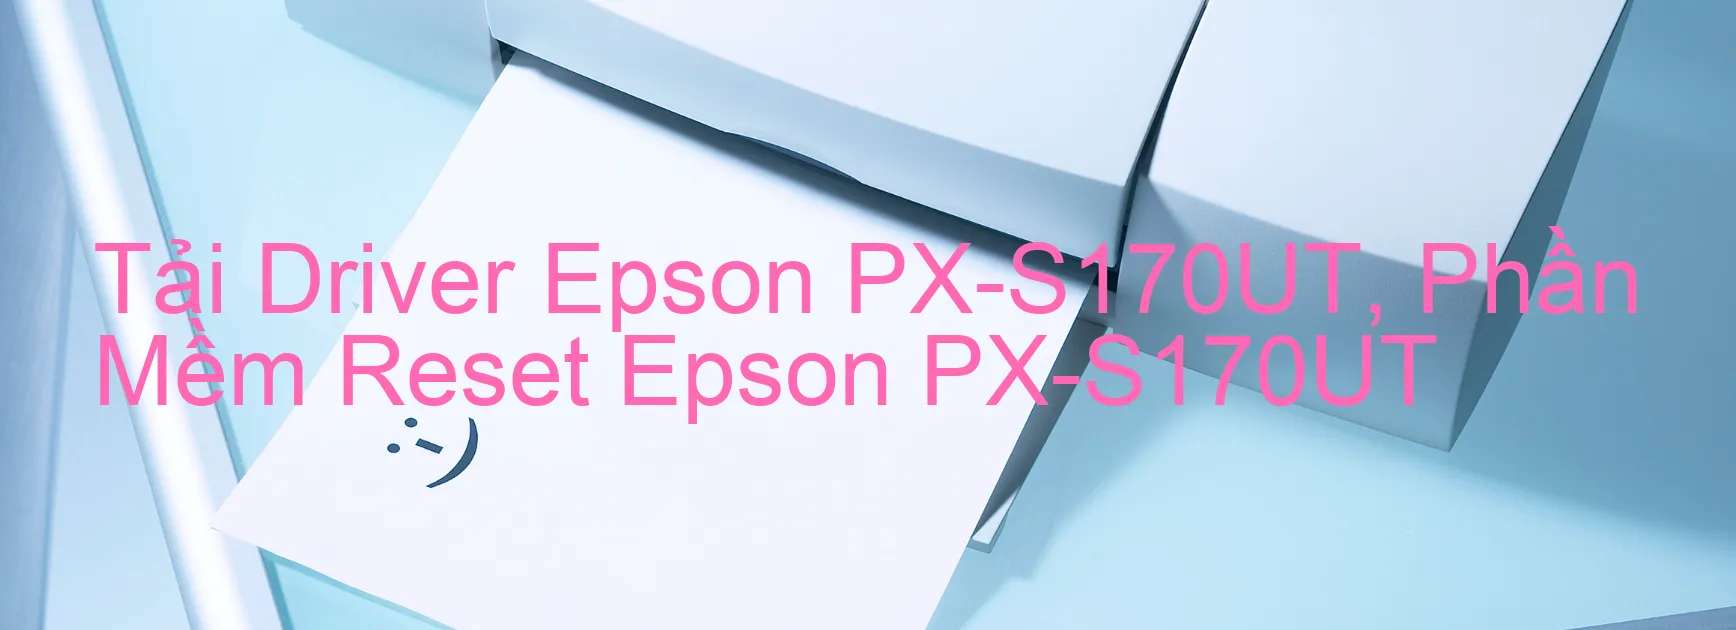 Driver Epson PX-S170UT, Phần Mềm Reset Epson PX-S170UT